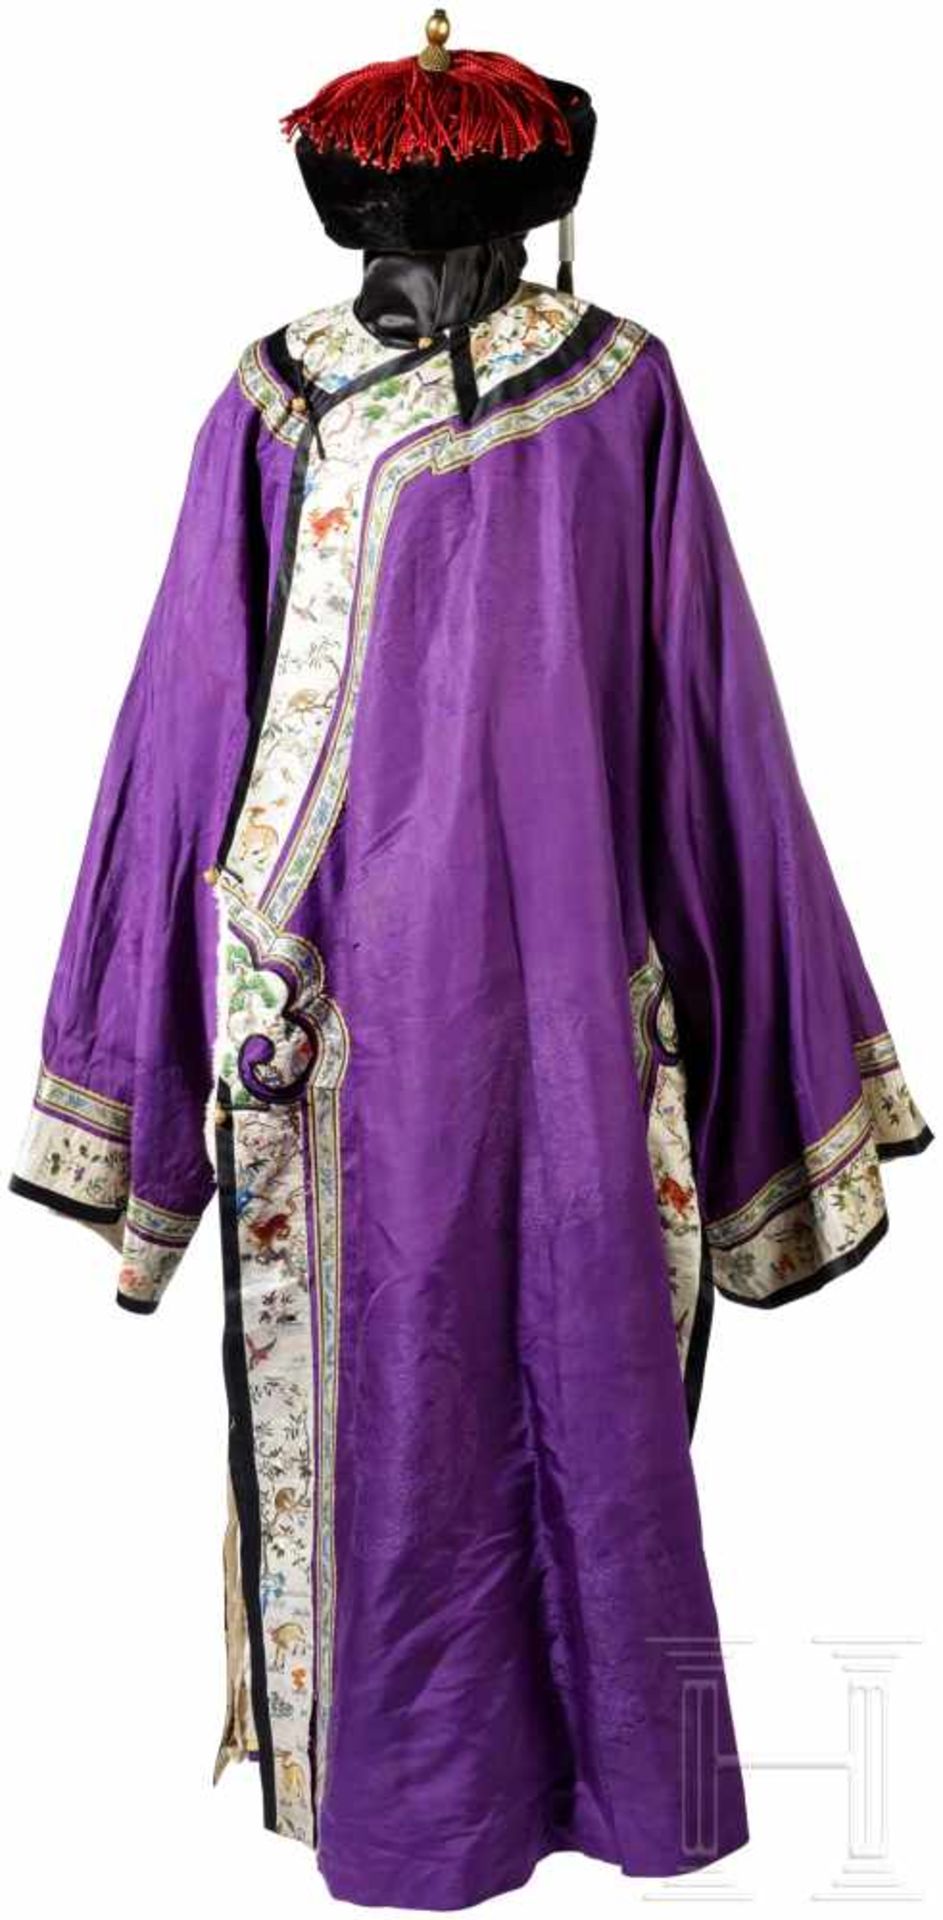 Robe und Hut eines höheren Staatsbeamten, China, 19. Jhdt.Bodenlange Robe aus violettem Seidendamast